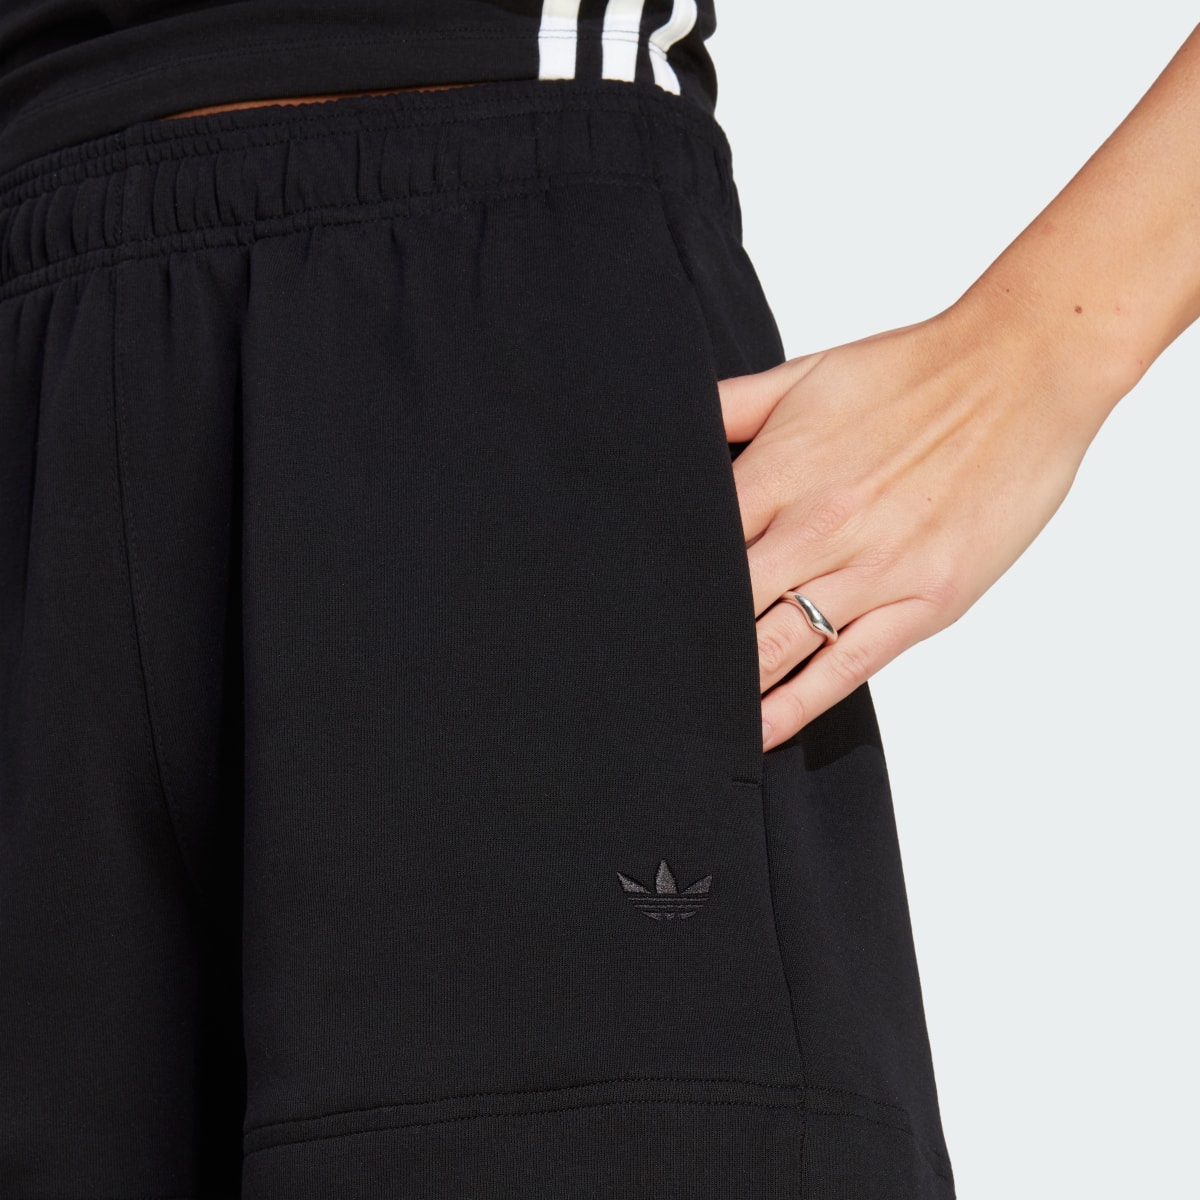 Adidas Premium Essentials Loose Shorts. 6